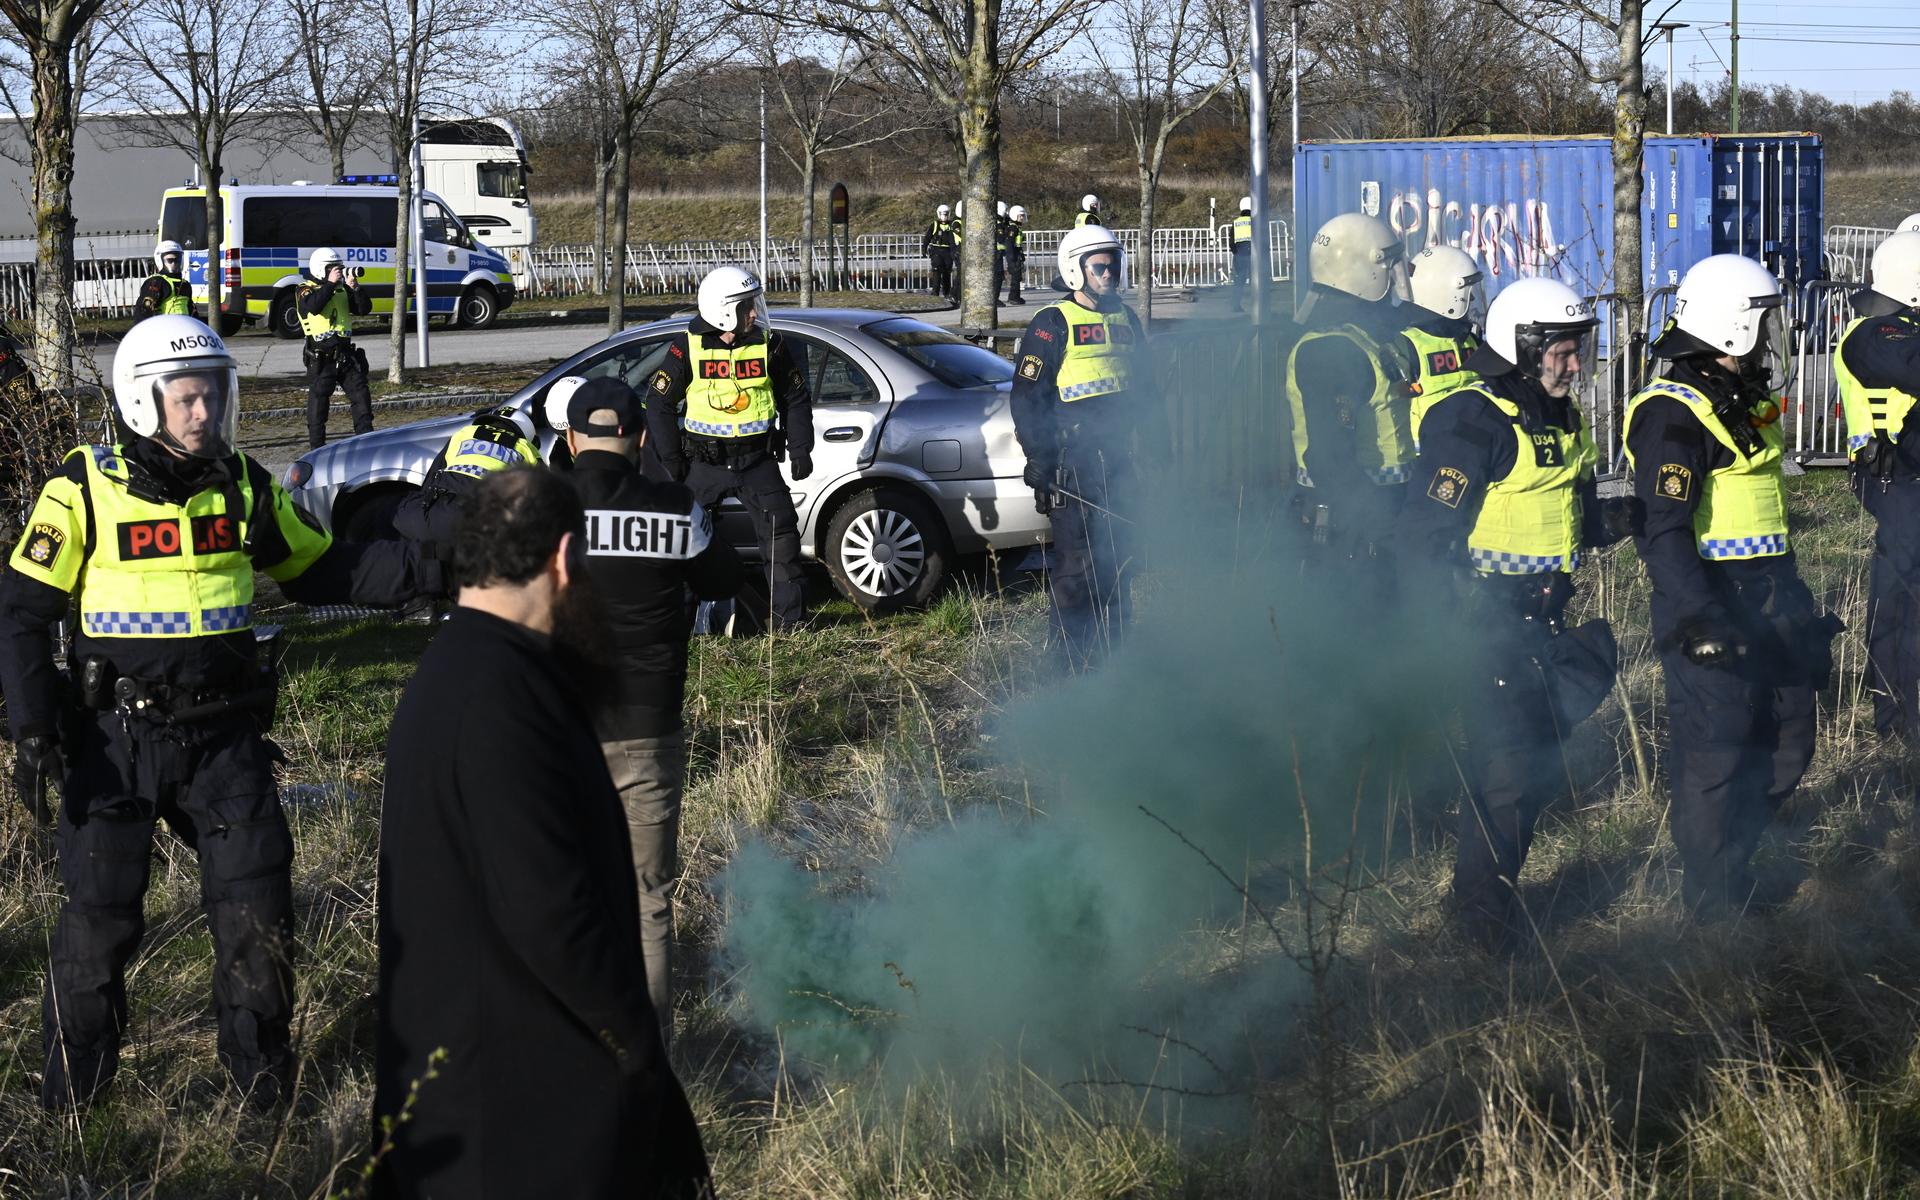 Polis griper en person som kört in en bil i avspärrningarna vid Skånegården i Malmö där Rasmus Paludan, partiledare för det danska högerextrema partiet Stram kurs, höll en manifestation. Paludan hade fått tillstånd för en sammankomst i Landskrona, men polisen flyttade under lördagen sammankomsten.